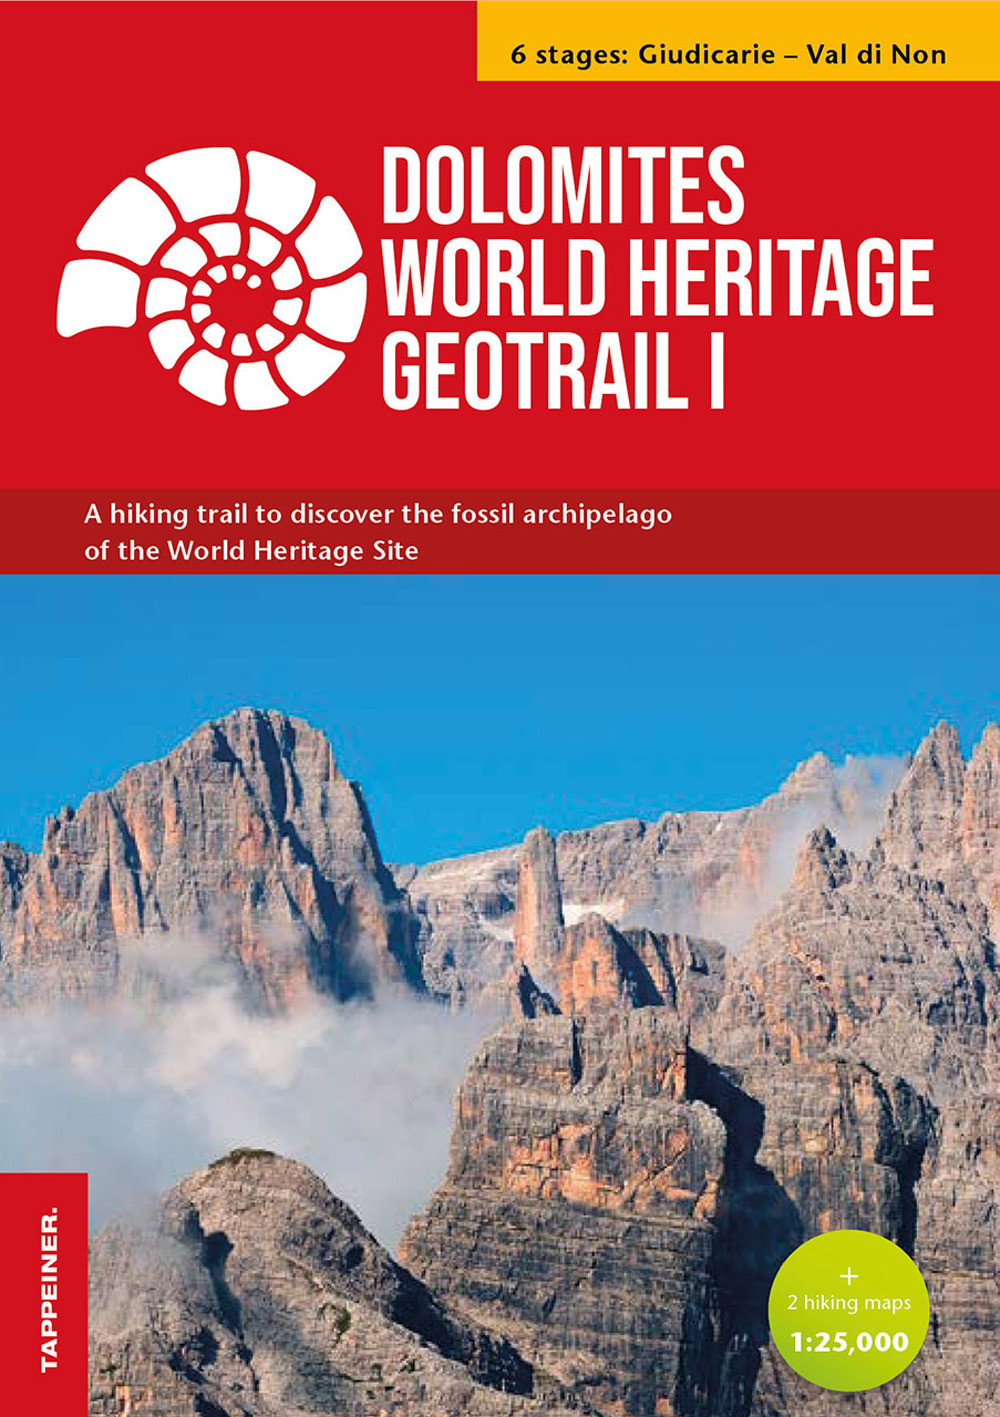 Dolomites World Heritage geotrail. Un trekking alla scoperta dell'arcipelago fossile del Patrimonio mondiale. Con 2 hiking maps 1:25.000. Vol. 1: Giudicarie-Valle di Non (Trentino)